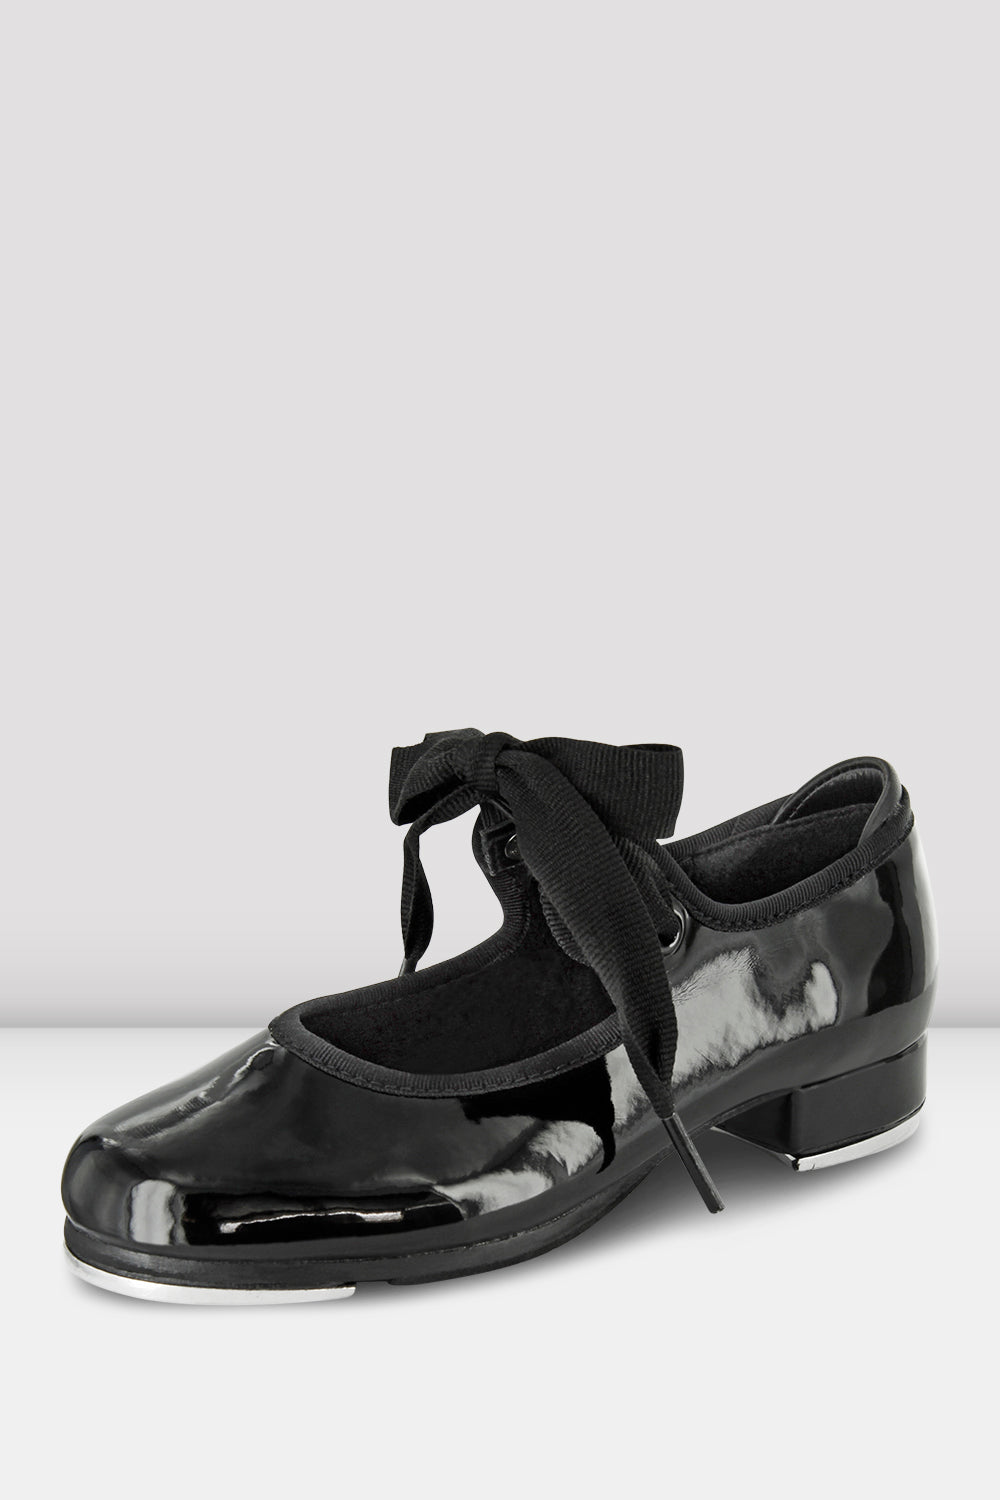 Childrens Annie Tyette Tap Shoes, Patent Black – BLOCH Dance US